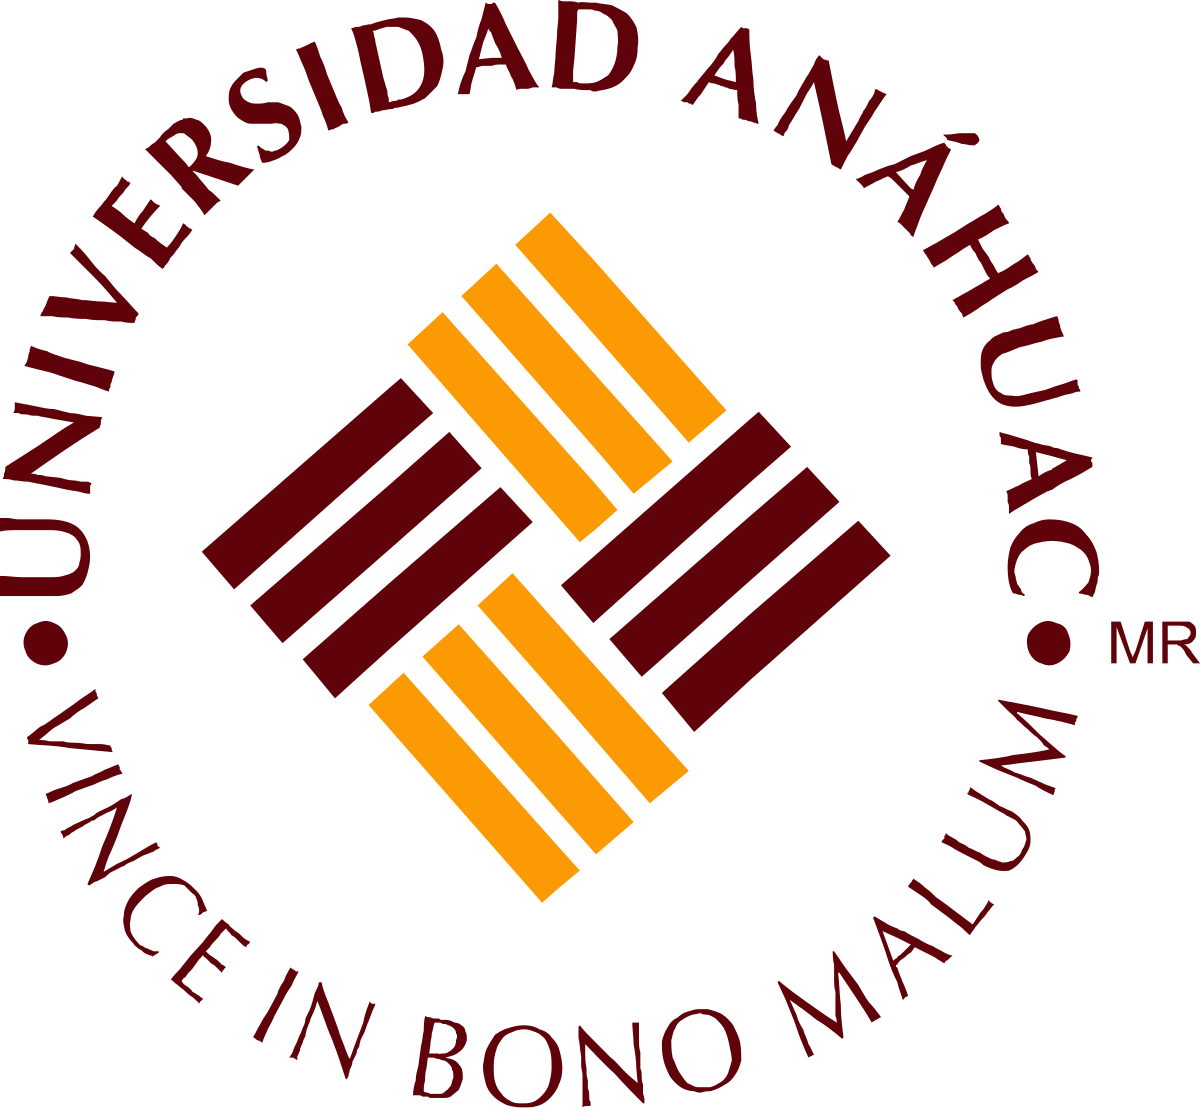 1200px-Logo_Universidad_Anáhuac.svg